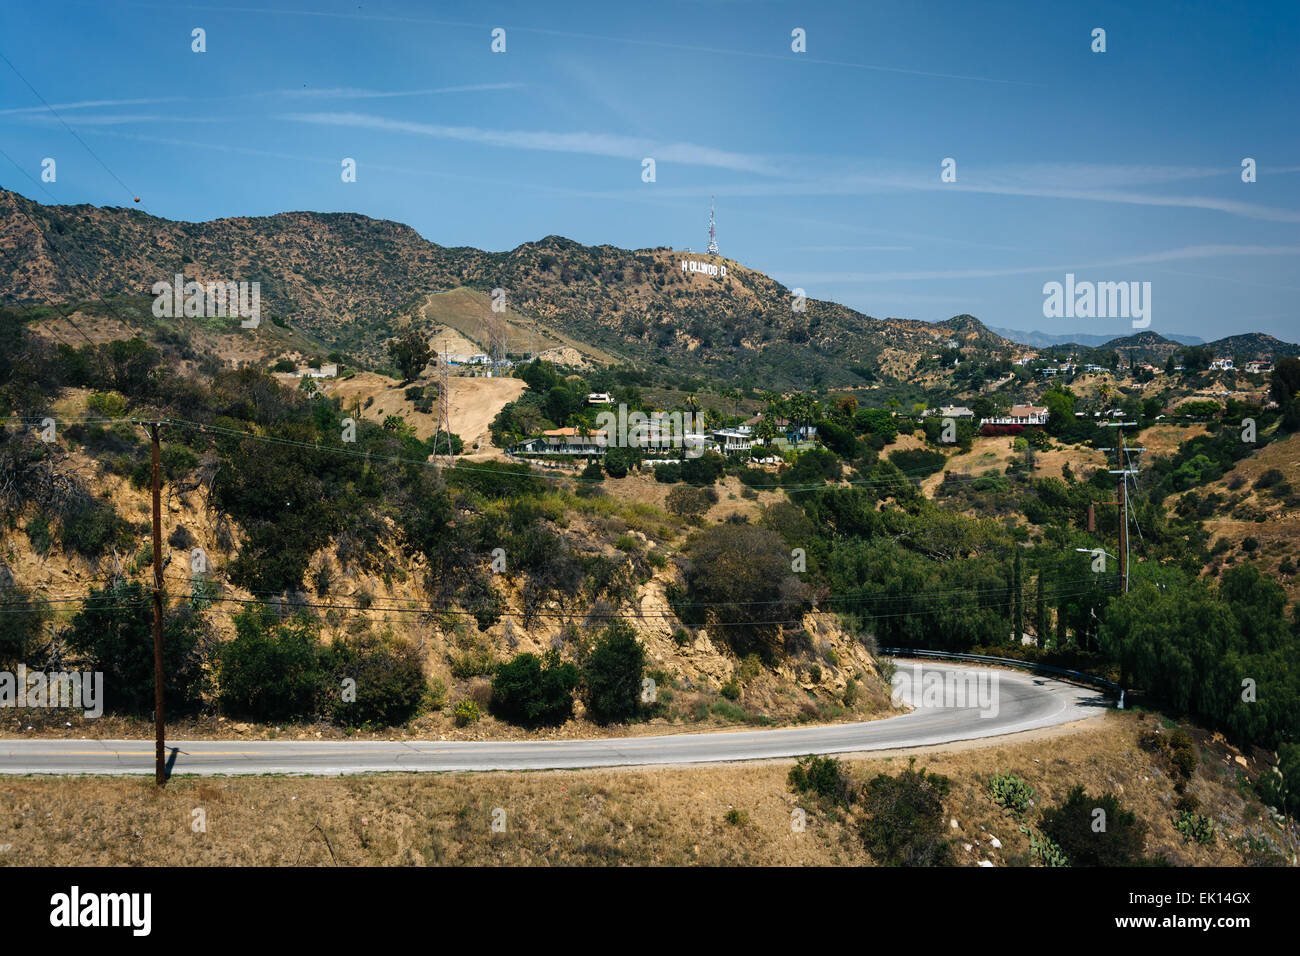 Vista de Mulholland Drive y las colinas de Hollywood, en Los Angeles, California. Foto de stock